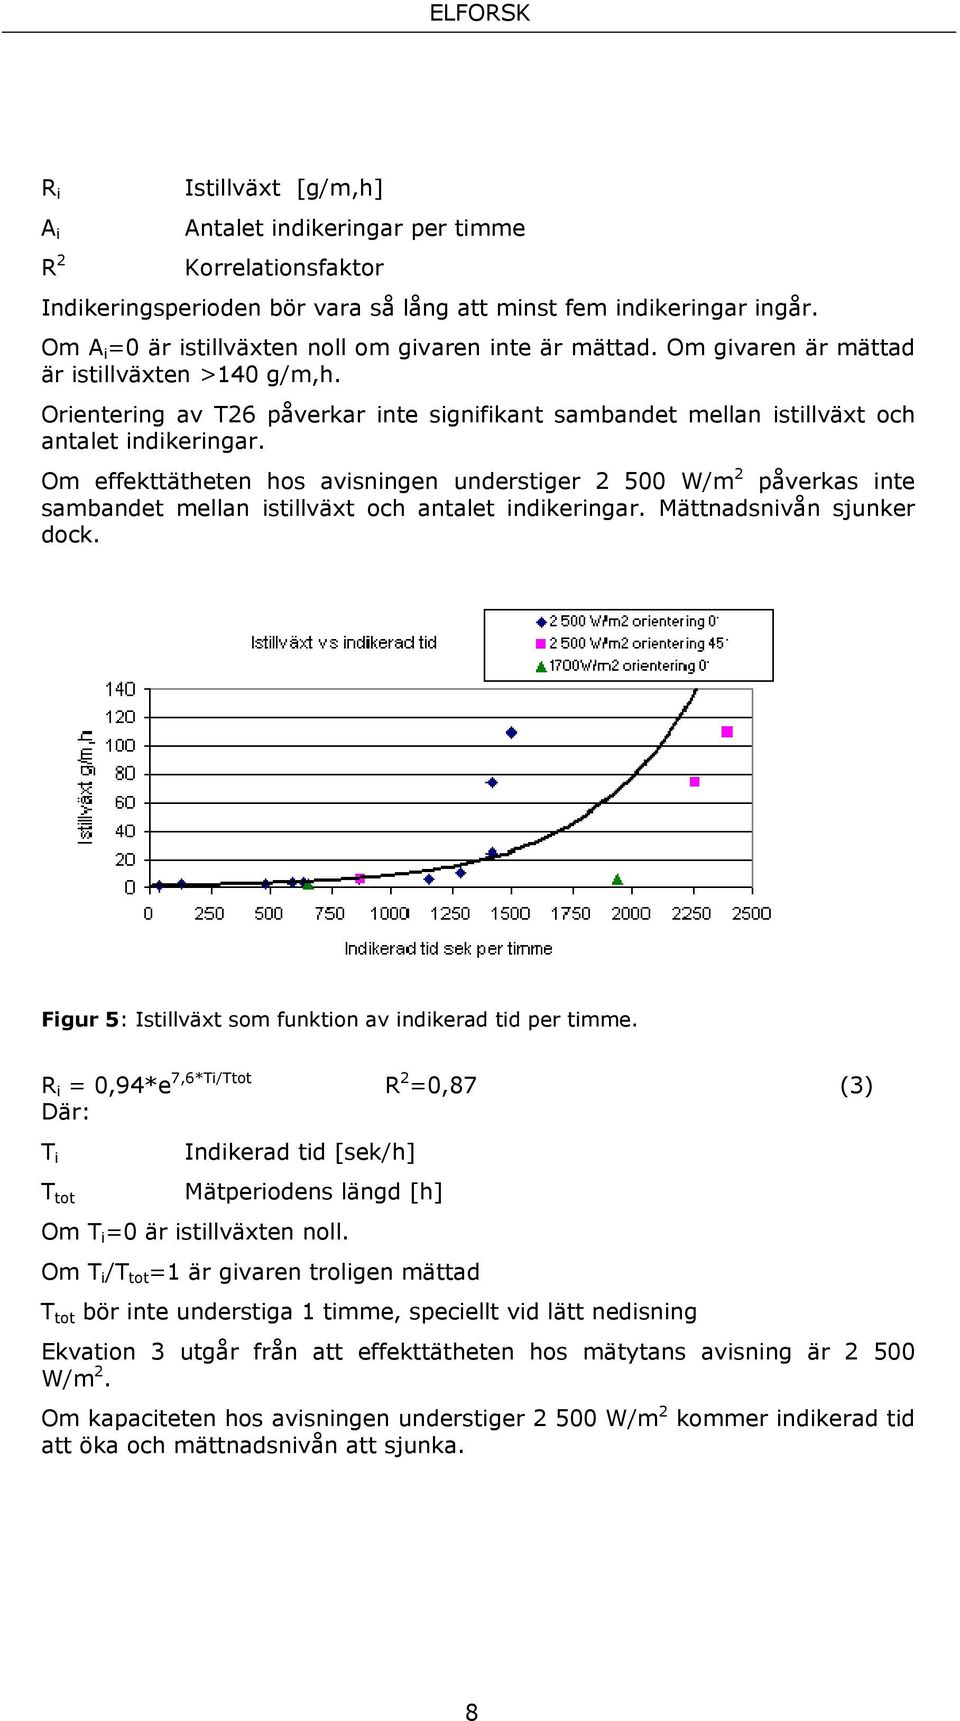 Orientering av T26 påverkar inte signifikant sambandet mellan istillväxt och antalet indikeringar.